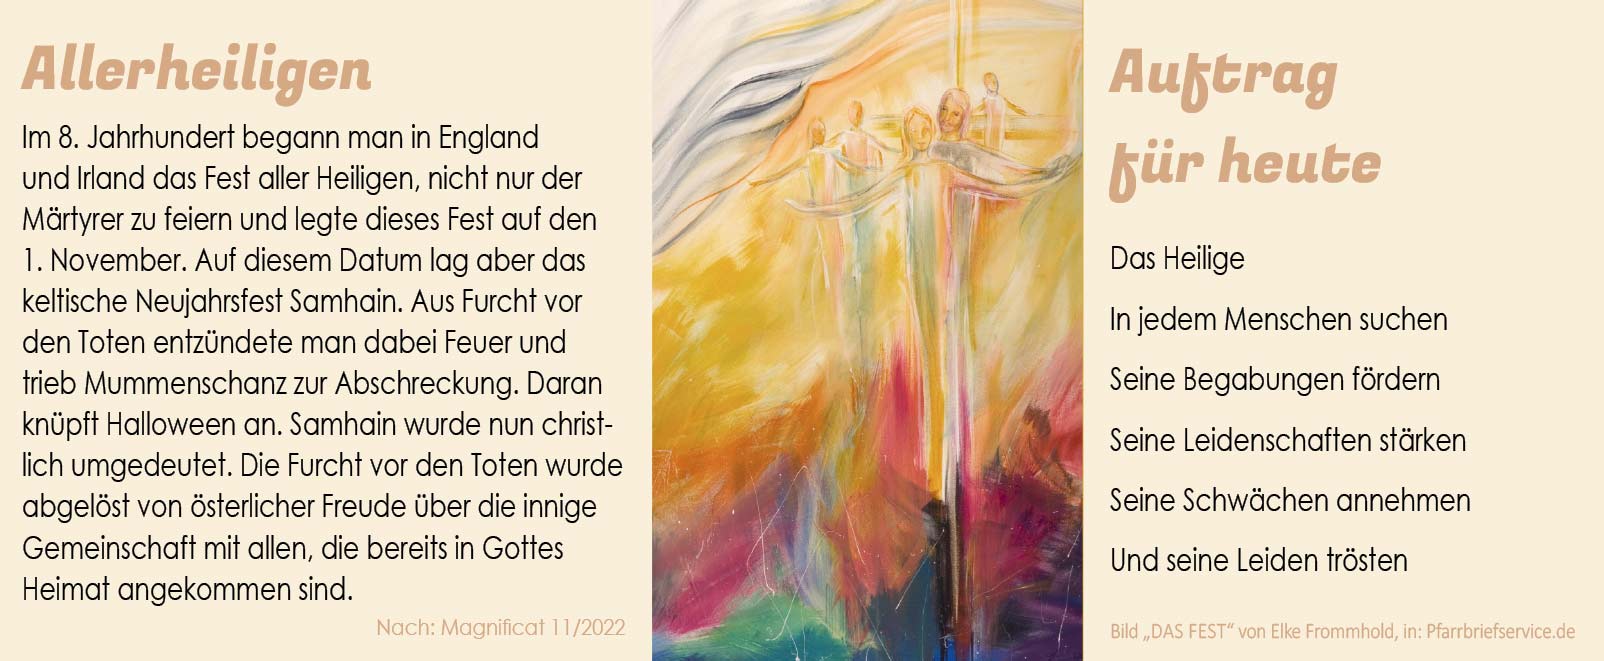 Spirituelles: Allerheiligen - Auftrag für heute (Bild „das Fest“ von Elke Frommhold, in: Pfarrbriefservice.de)